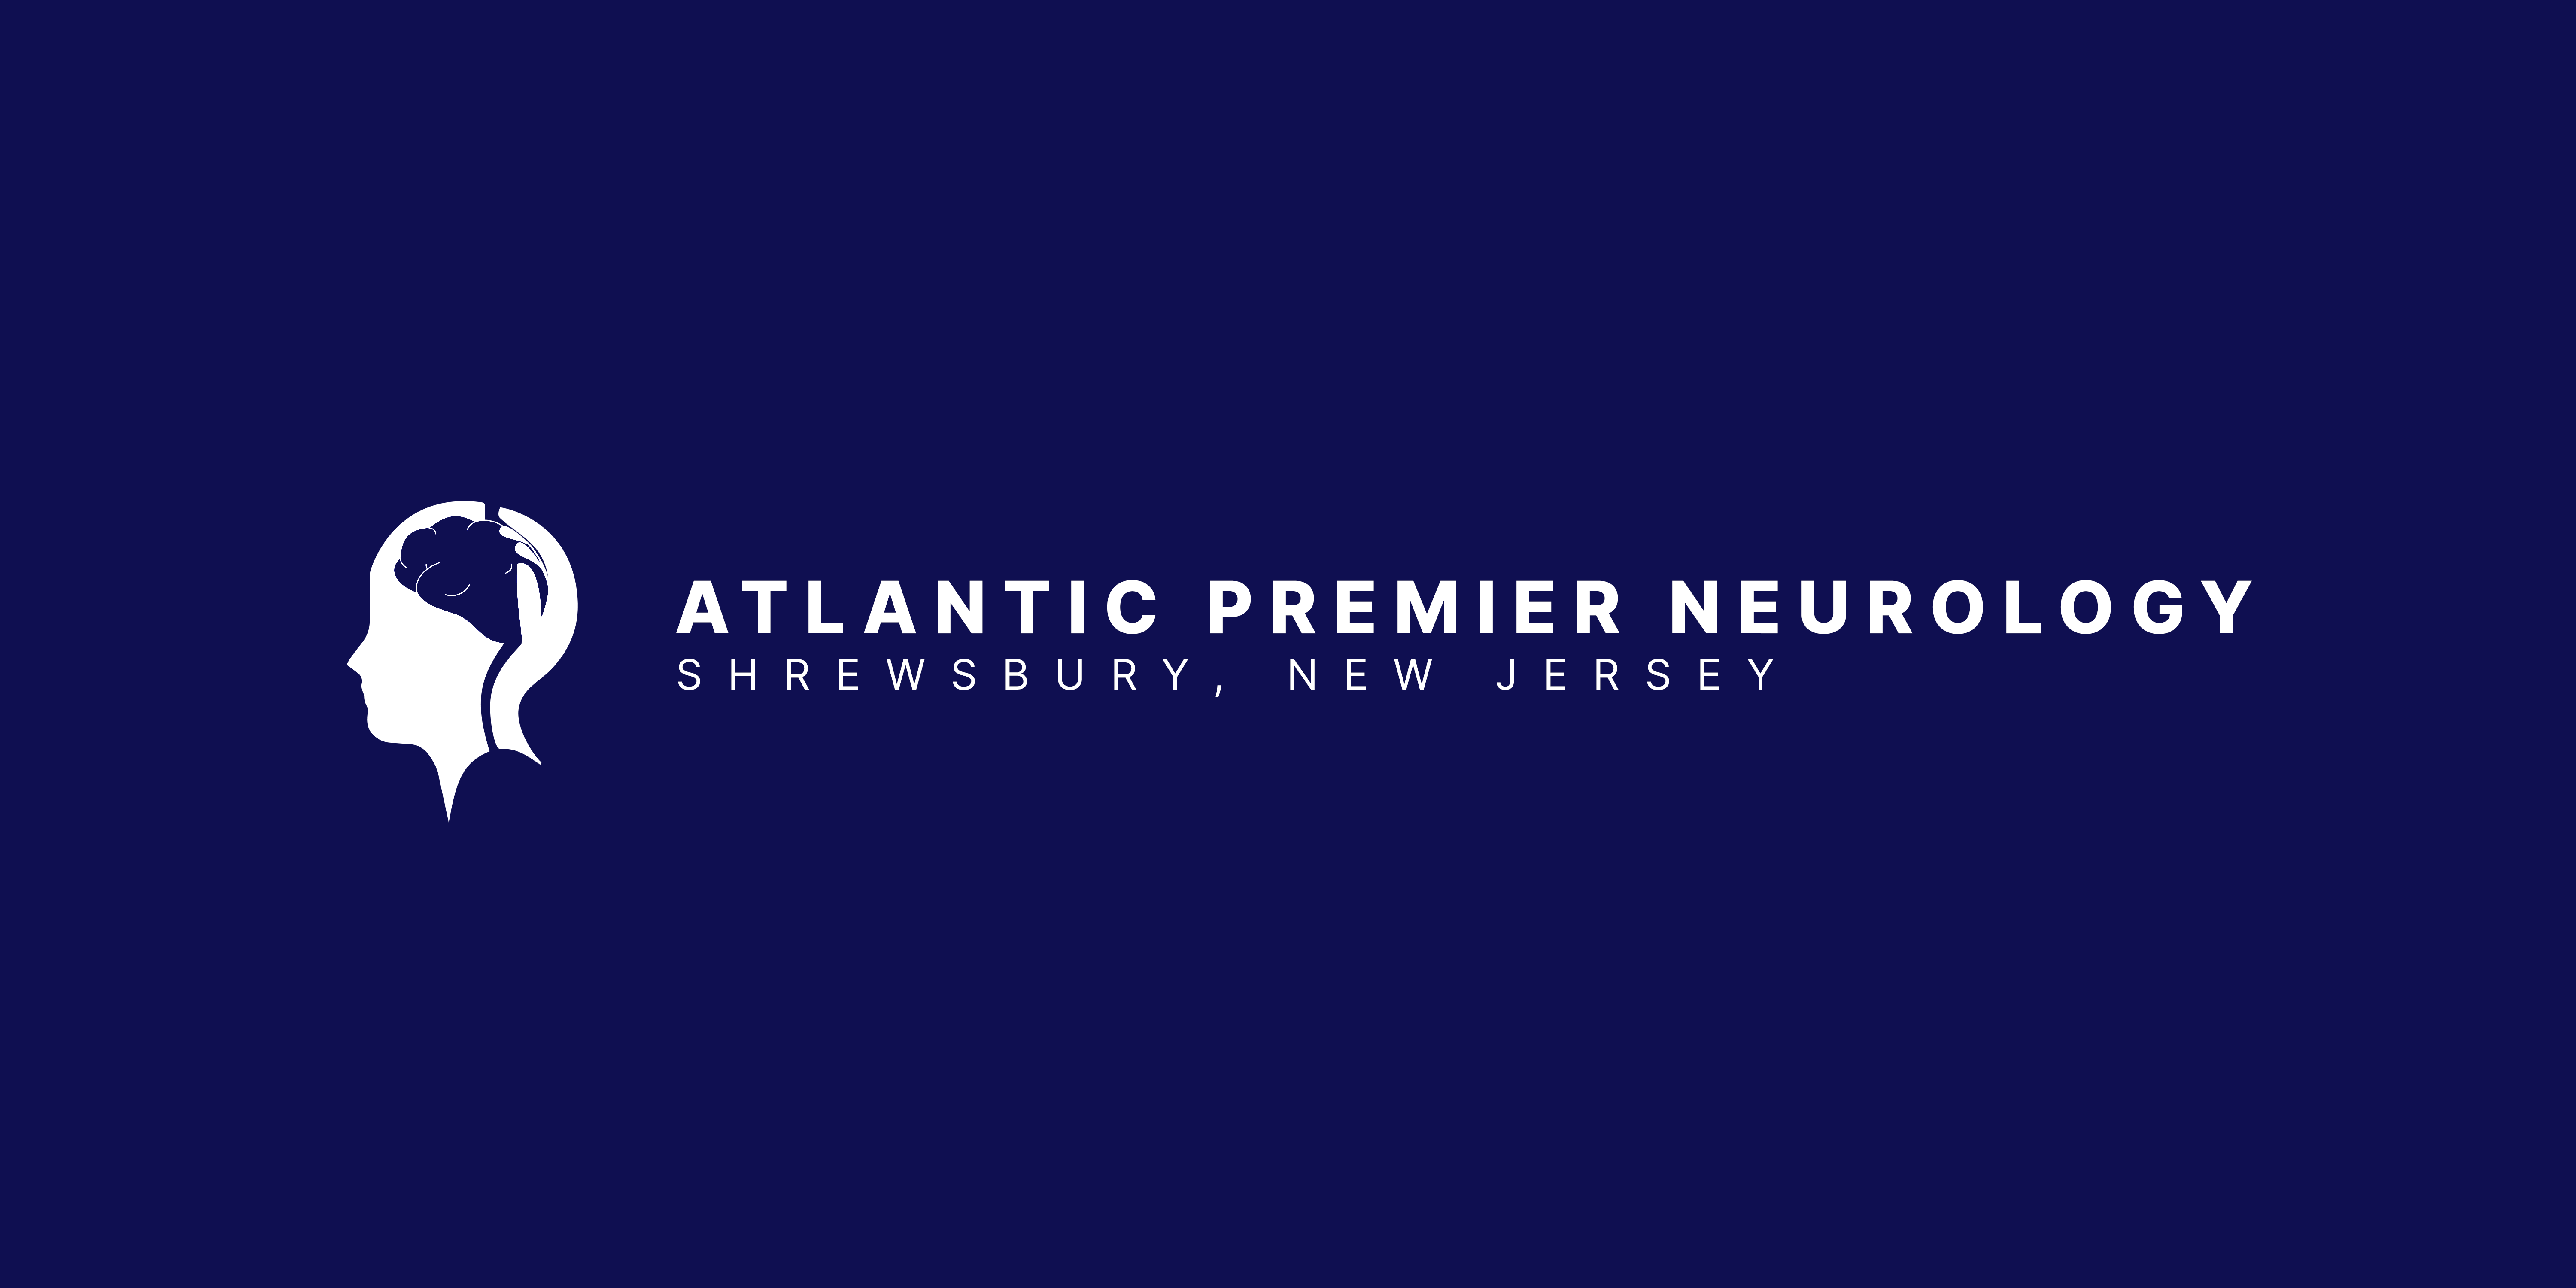 Atlantic Premier Neurology (APN) - New Jersey